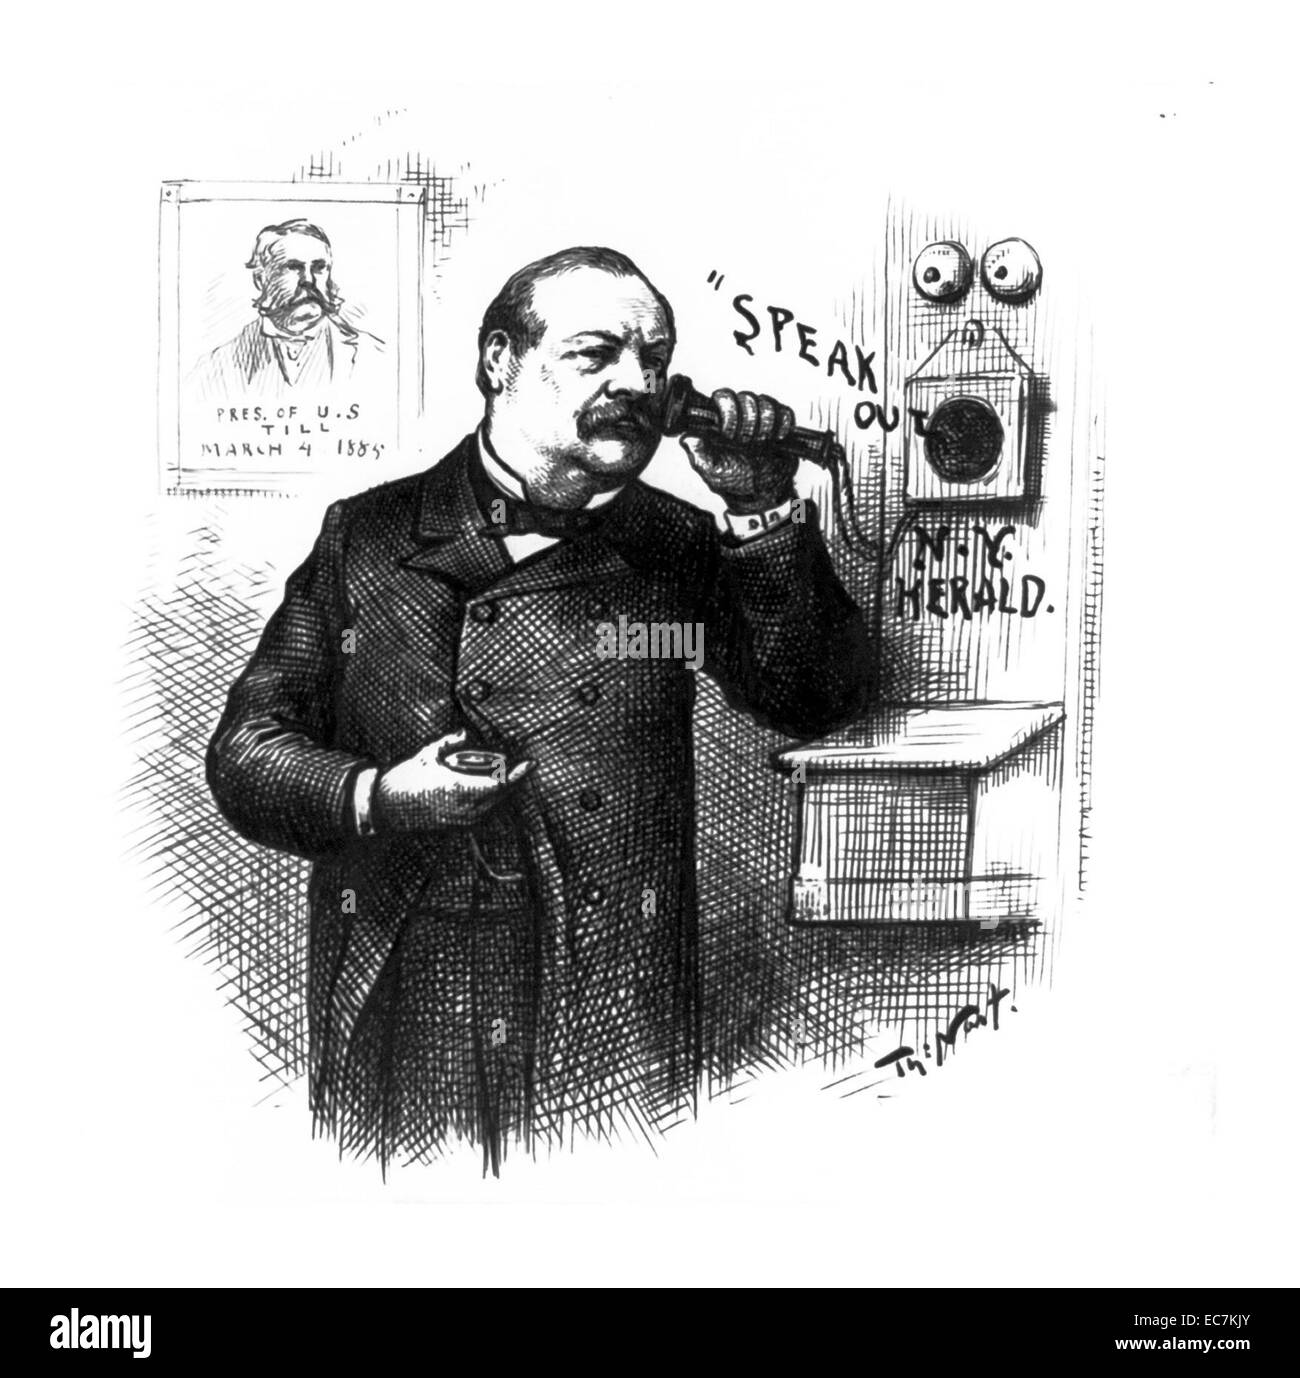 Sprechen Sie "New York Herald. Der designierte Präsident Grover Cleveland hält einen Telefonhörer ans Ohr. Hinter ihm an der Wand ein Porträt von Präsident Chester A. Arthur mit Untertiteln, "Pres. von USA bis März 4, 1885." Stockfoto